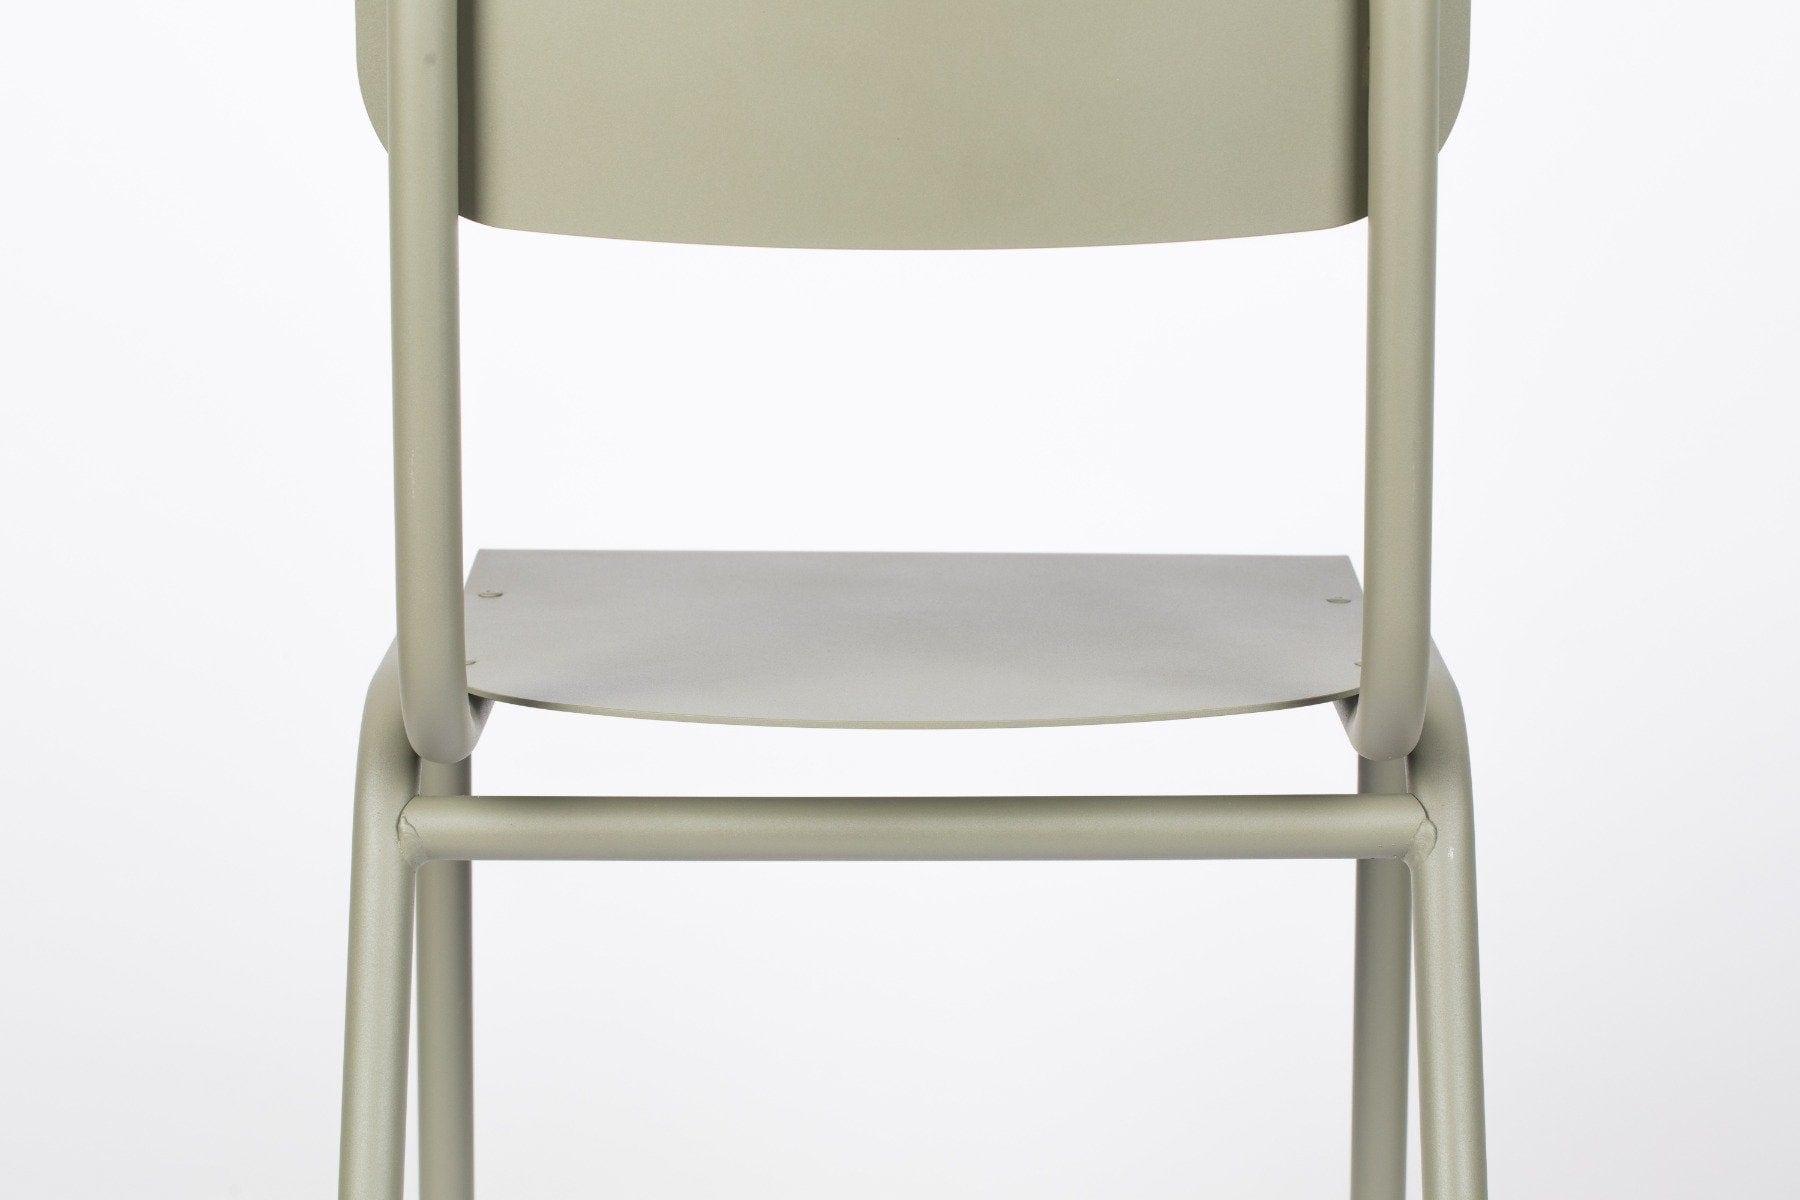 Krzesło zewnętrzne BACK TO SCHOOL oliwkowy, Zuiver, Eye on Design